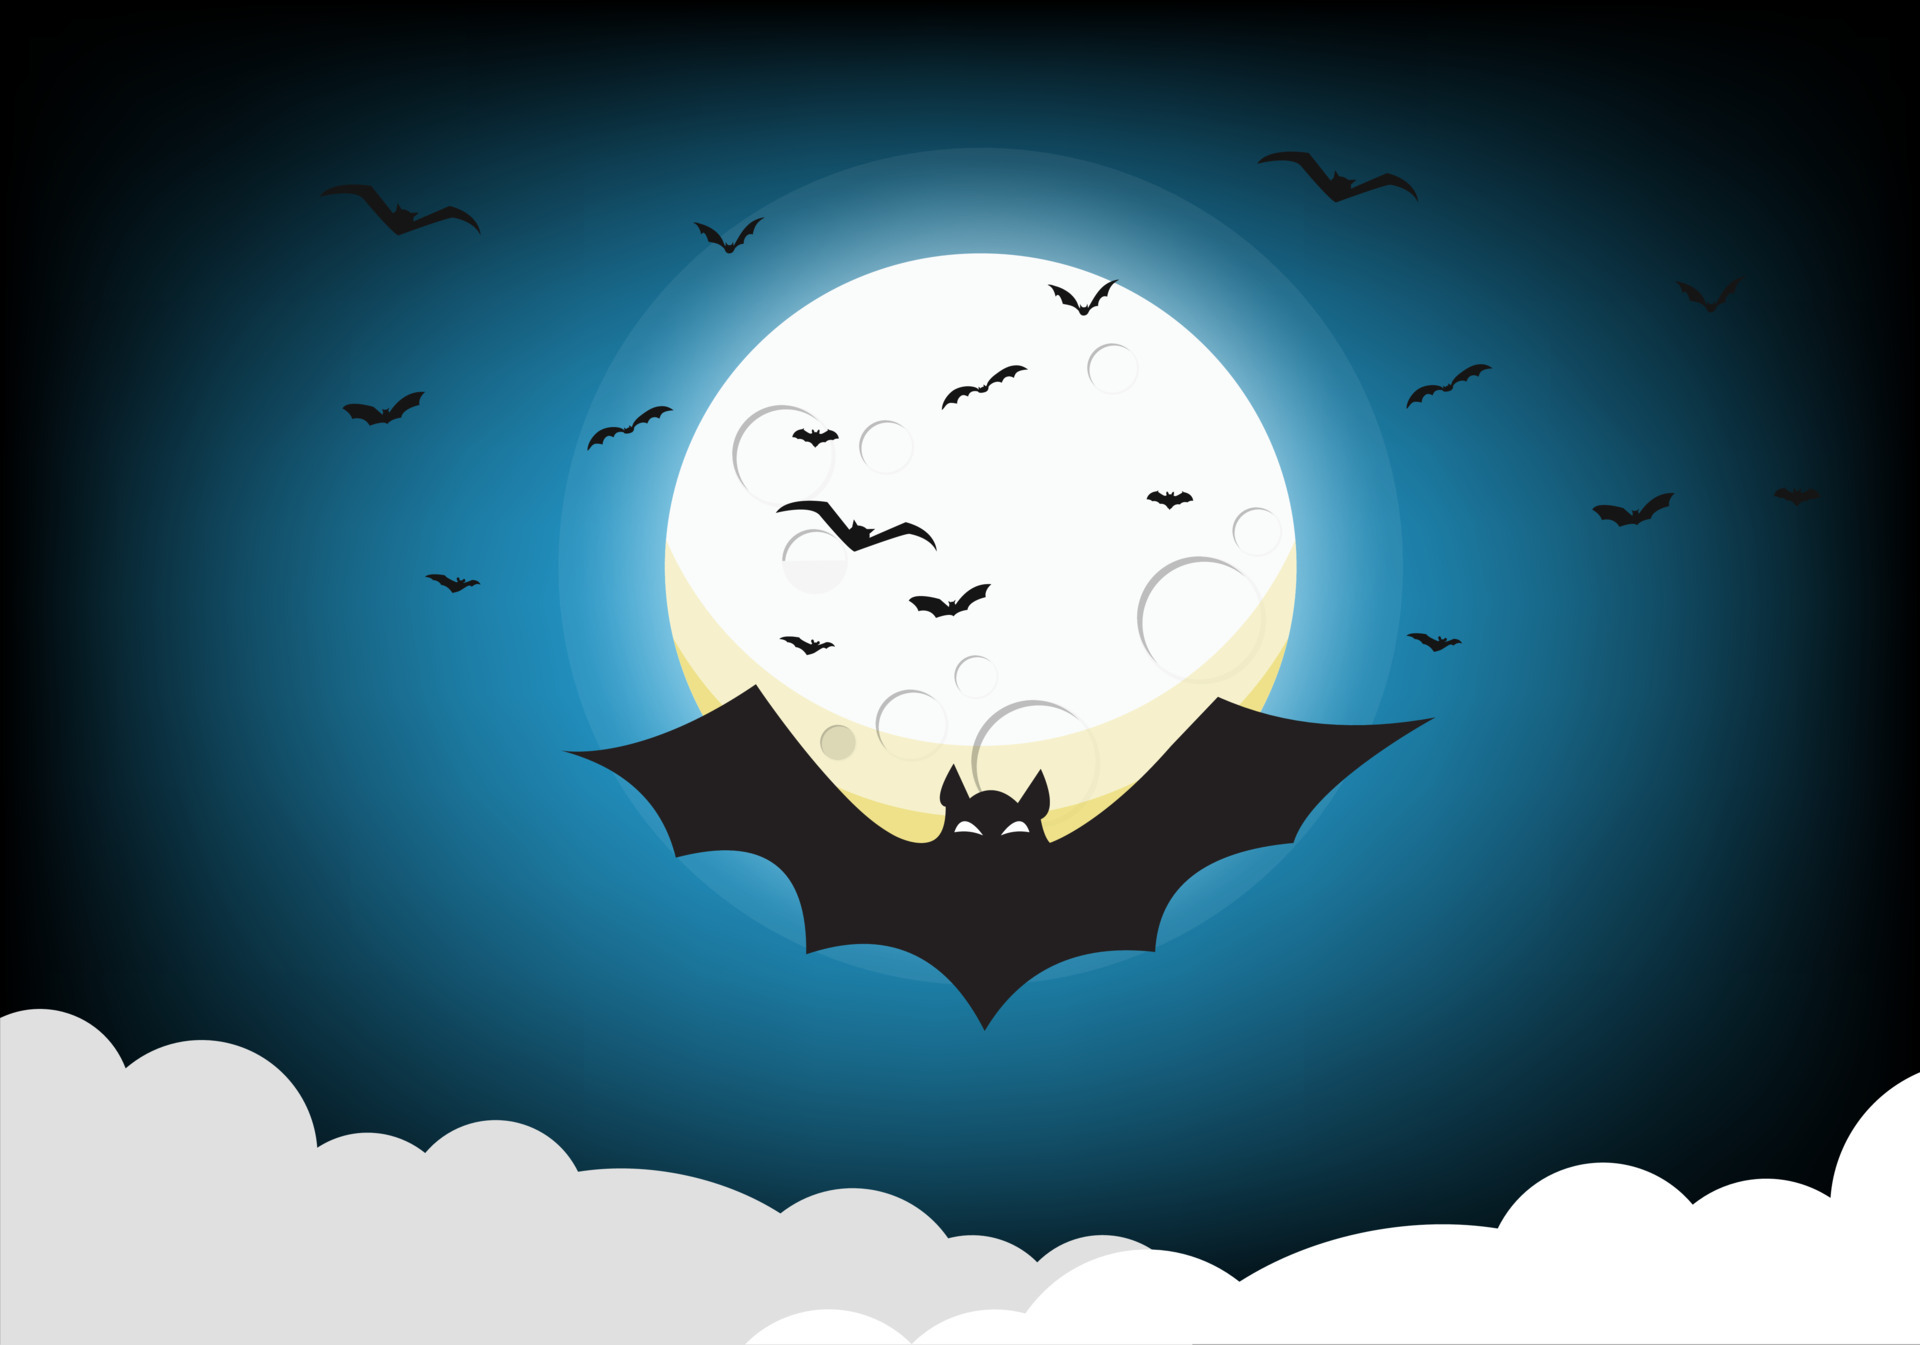 Chauve-souris Sur Le Fond De La Lune à La Lumière De La Nuit D'halloween